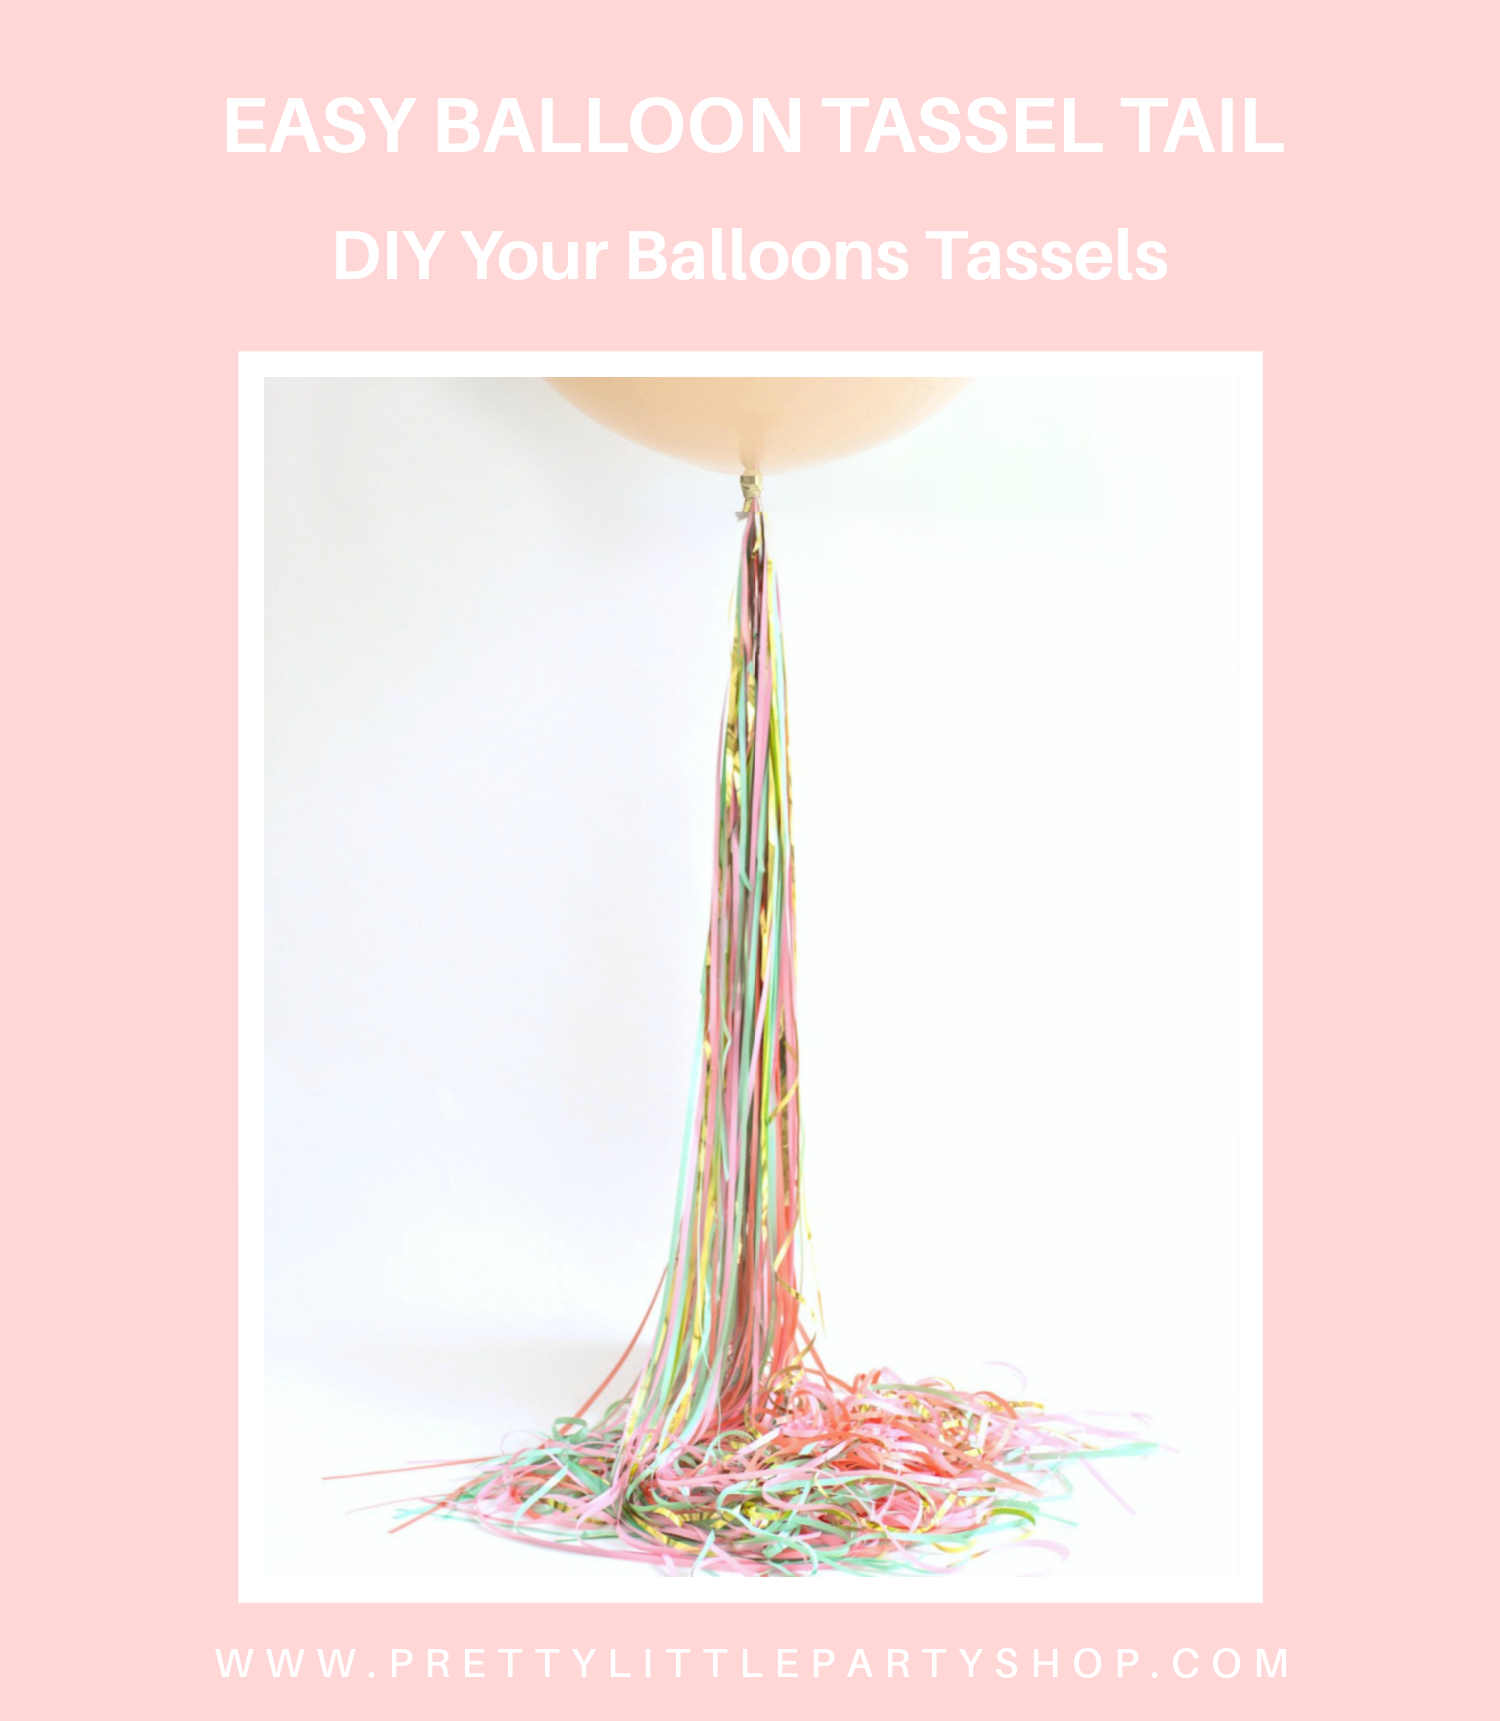 Easiest Quickest Balloon Tassel Tail Ever! Balloon Tassel Hack